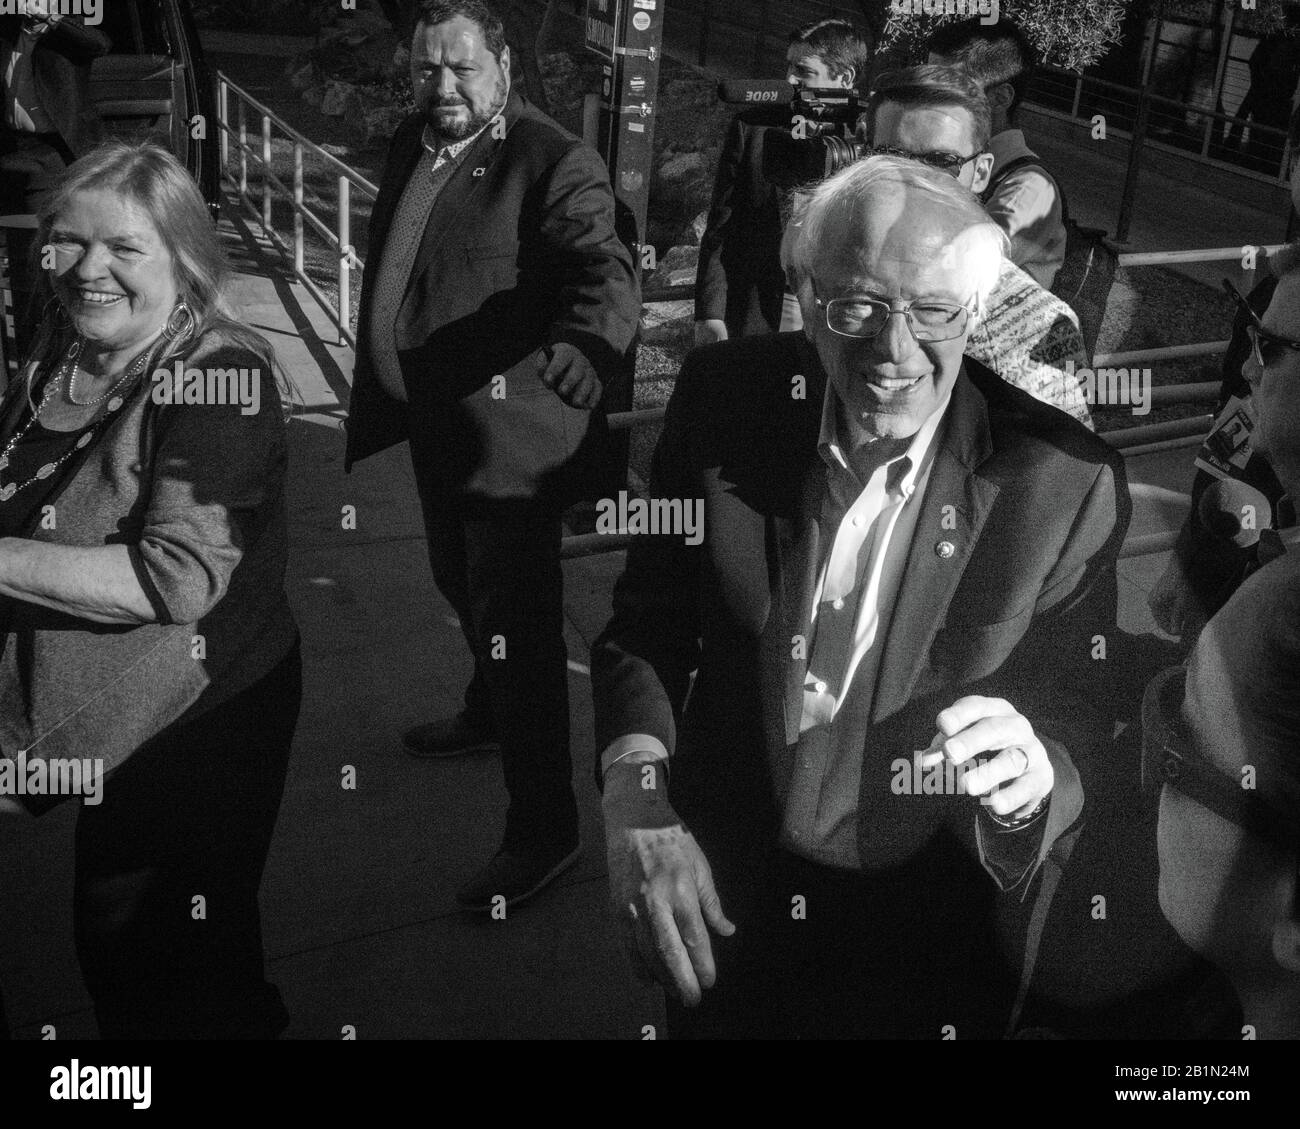 18 febbraio 2020, LAS VEGAS, NEVADA, USA - il senatore democratico Bernie Sanders parla al Rally presidenziale all'Università di Las Vegas prima del Nevada Caucus, Las Vegas, NV Foto Stock